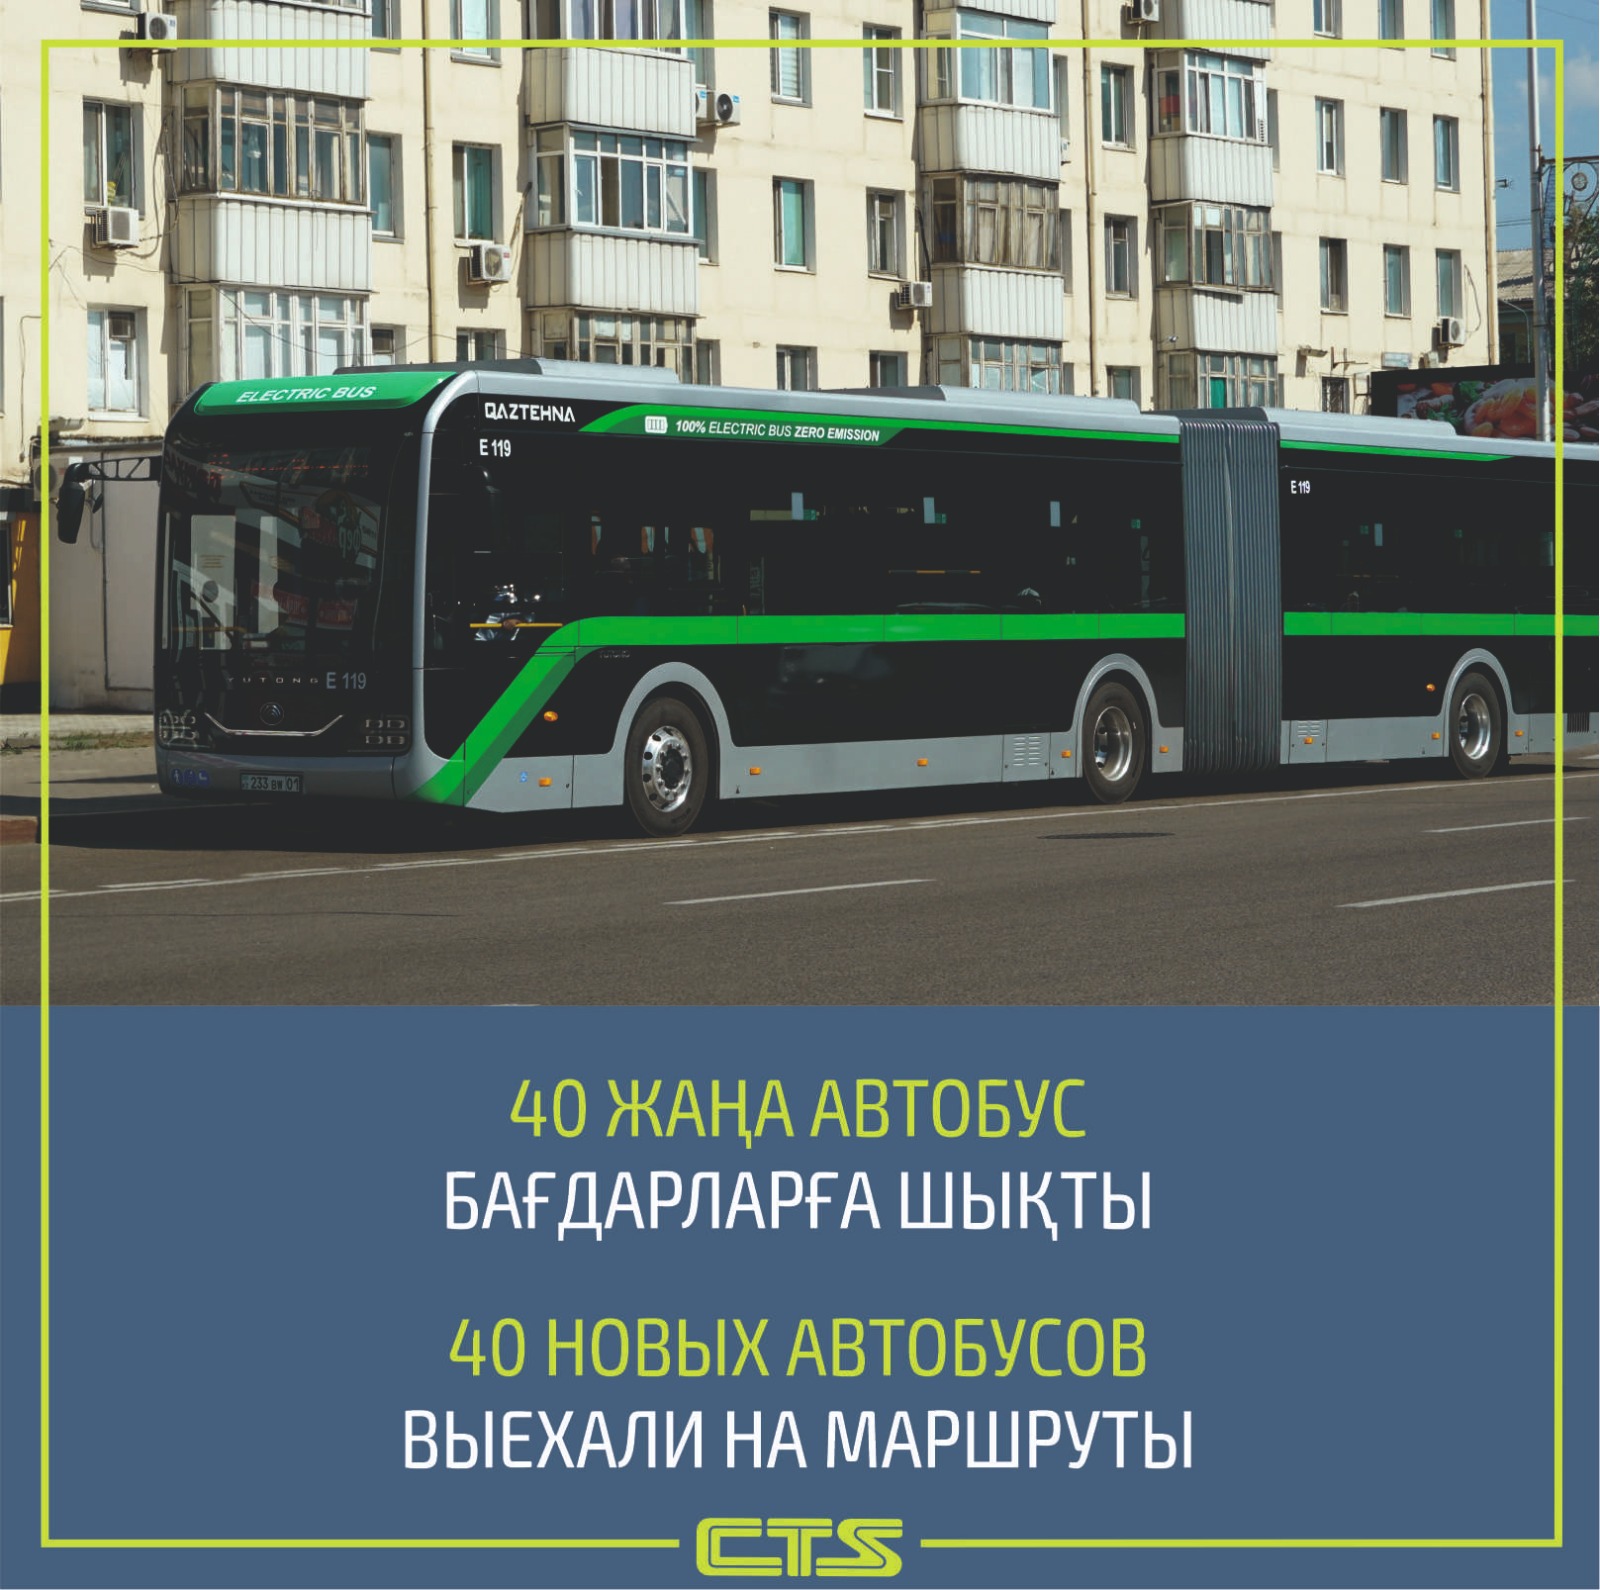 Еще 40 новых автобусов запустили в Астане